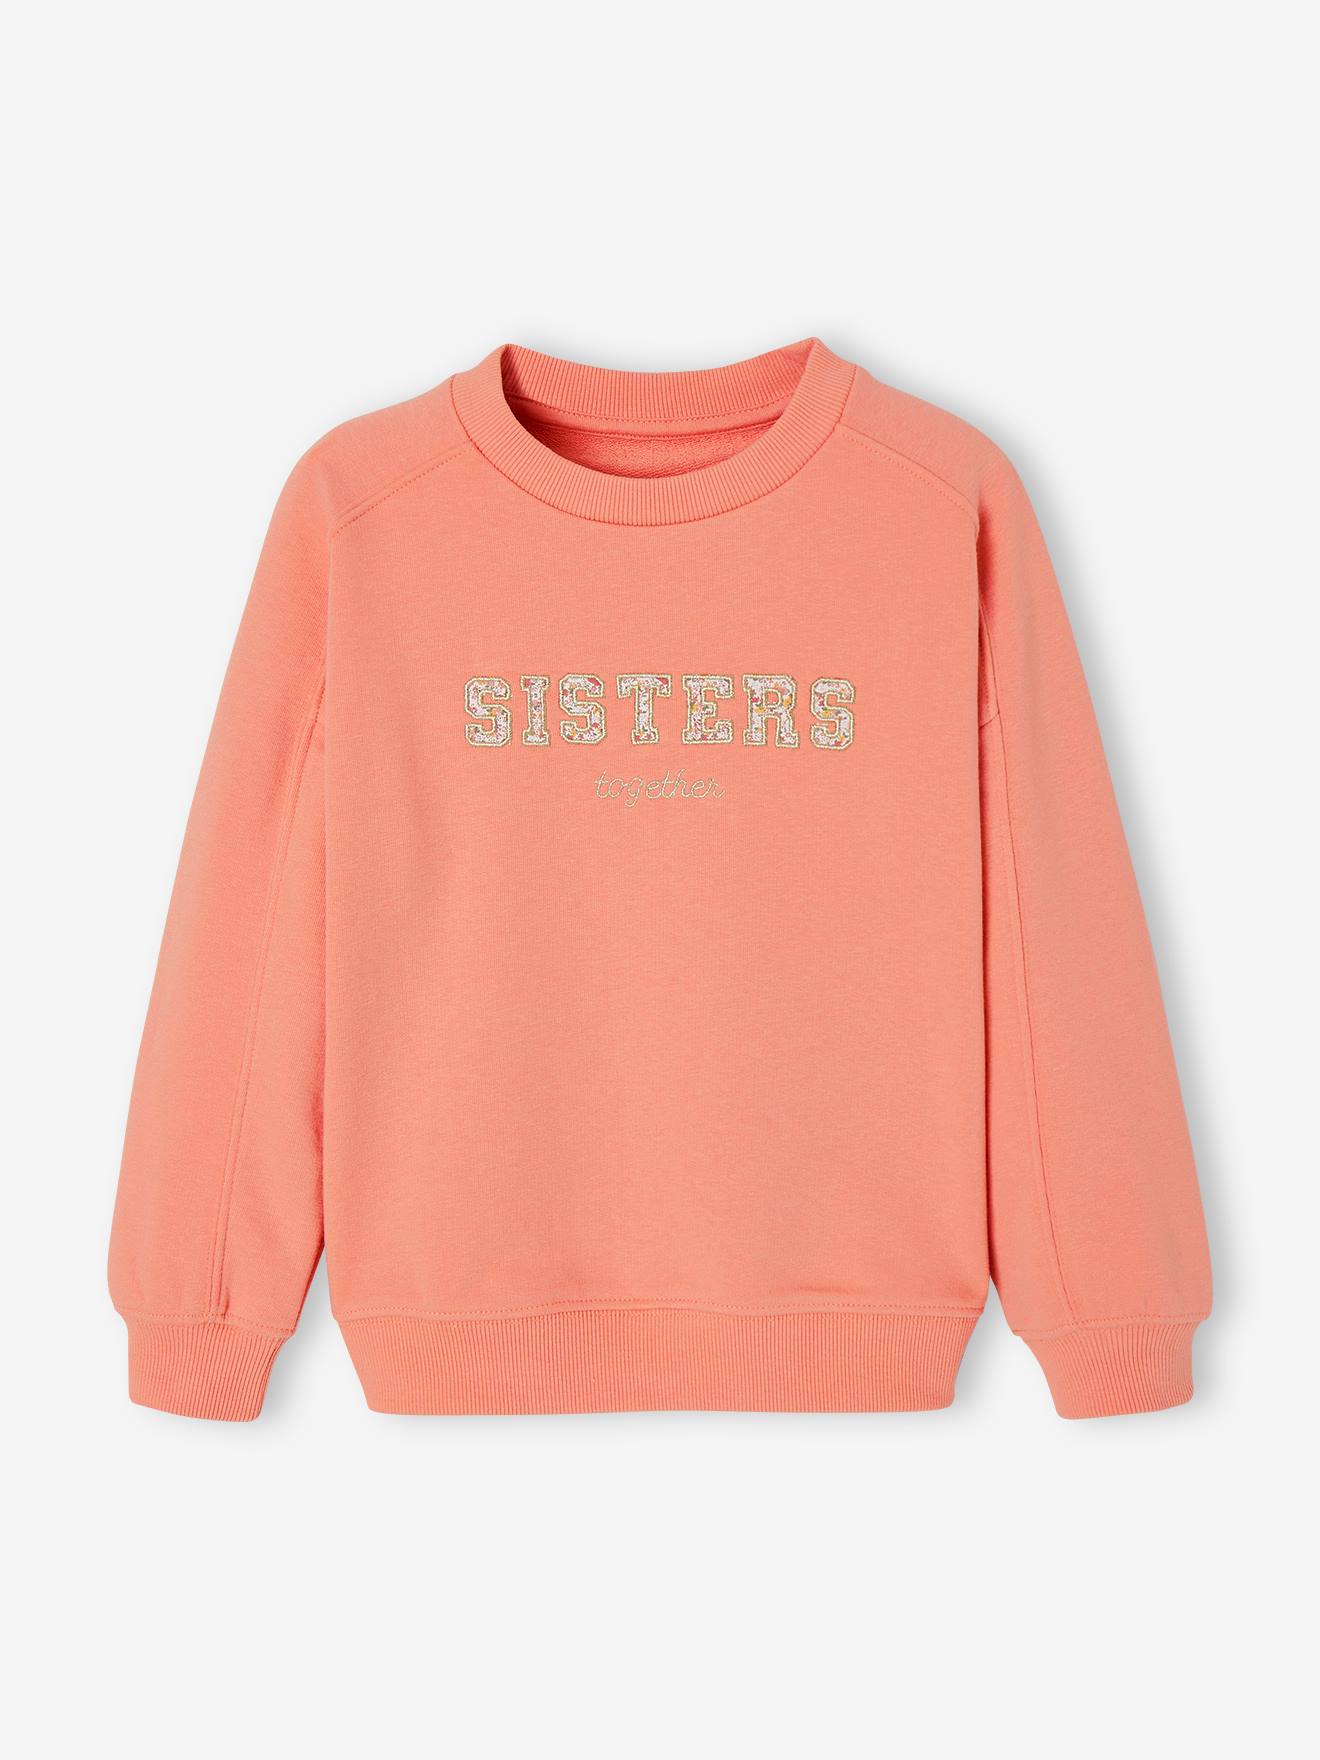 Romantische meisjessweater met mooie letters koraal